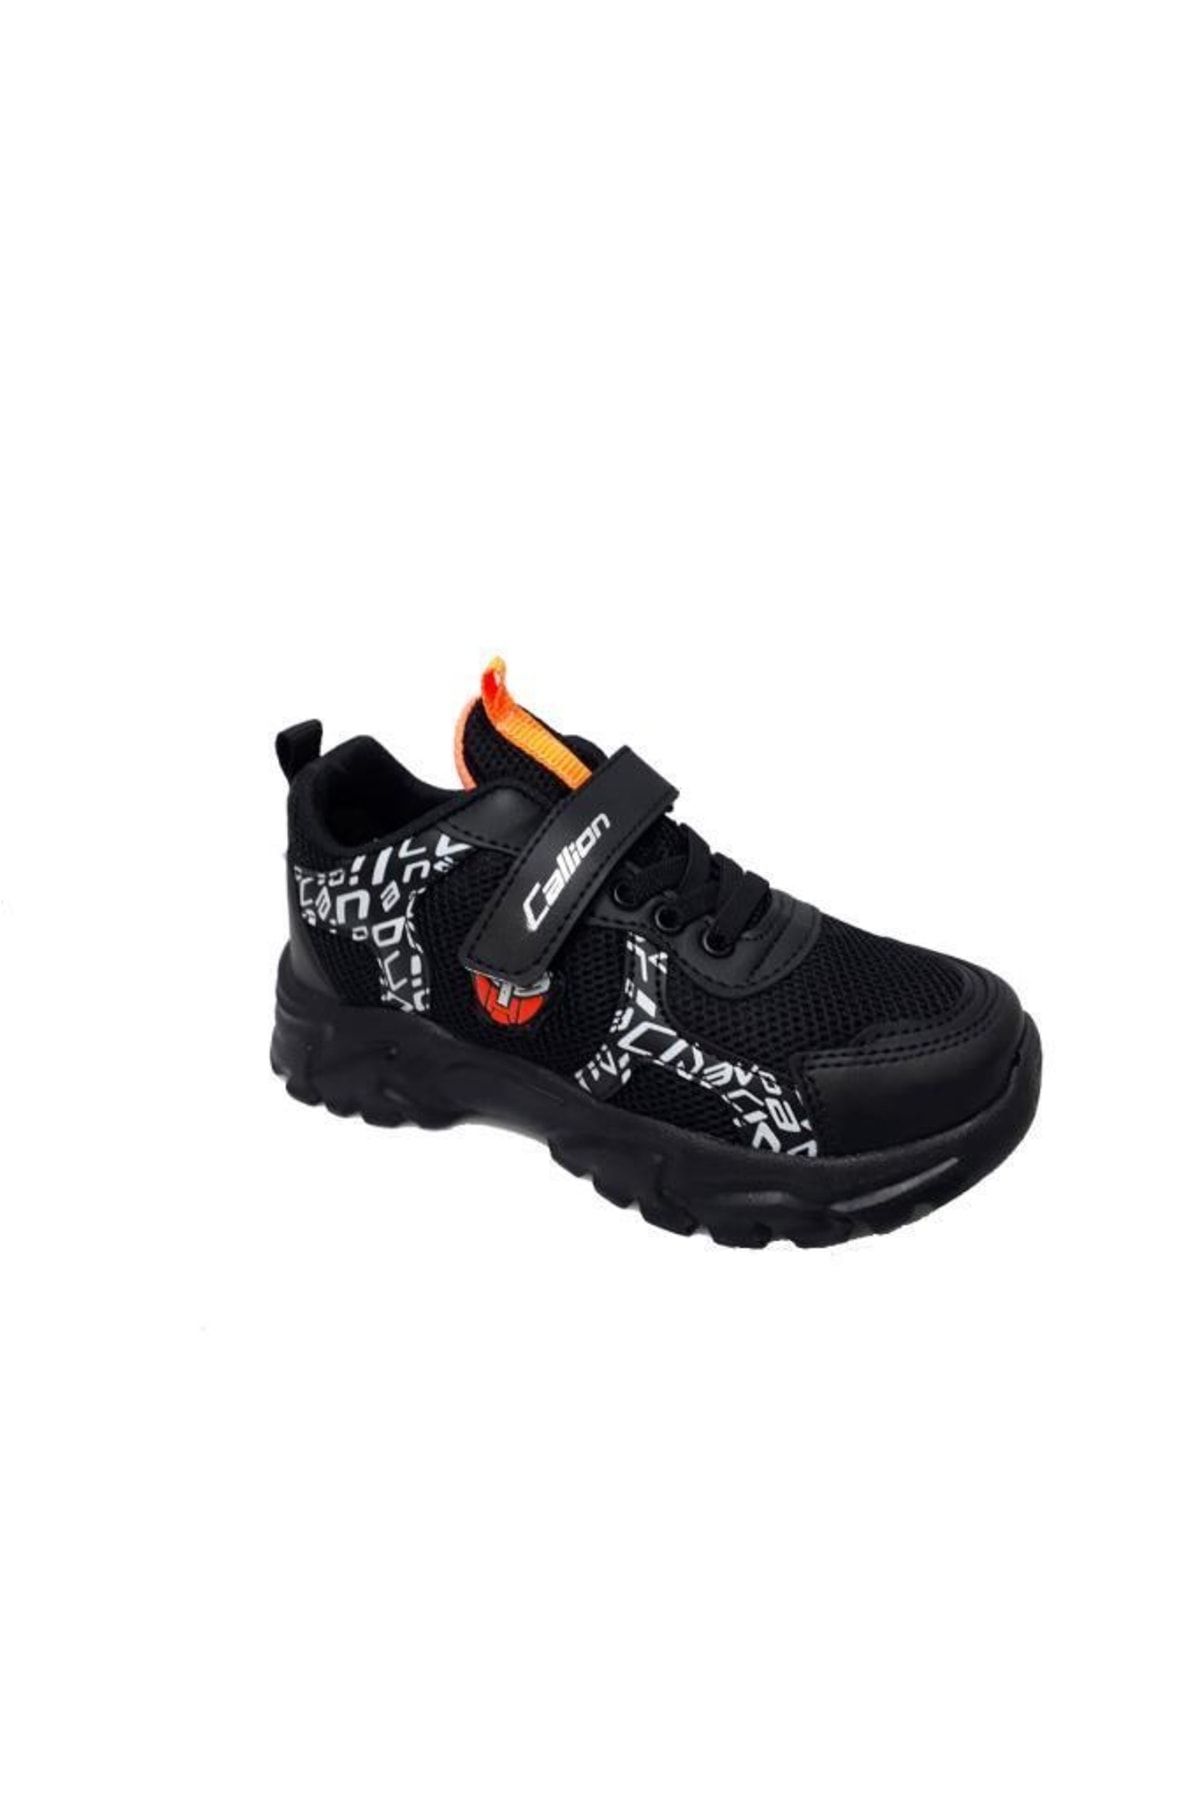 Callion 047 Anorak Çocuk Sneakers Ayakkabı 26-30 Siyah Oraj